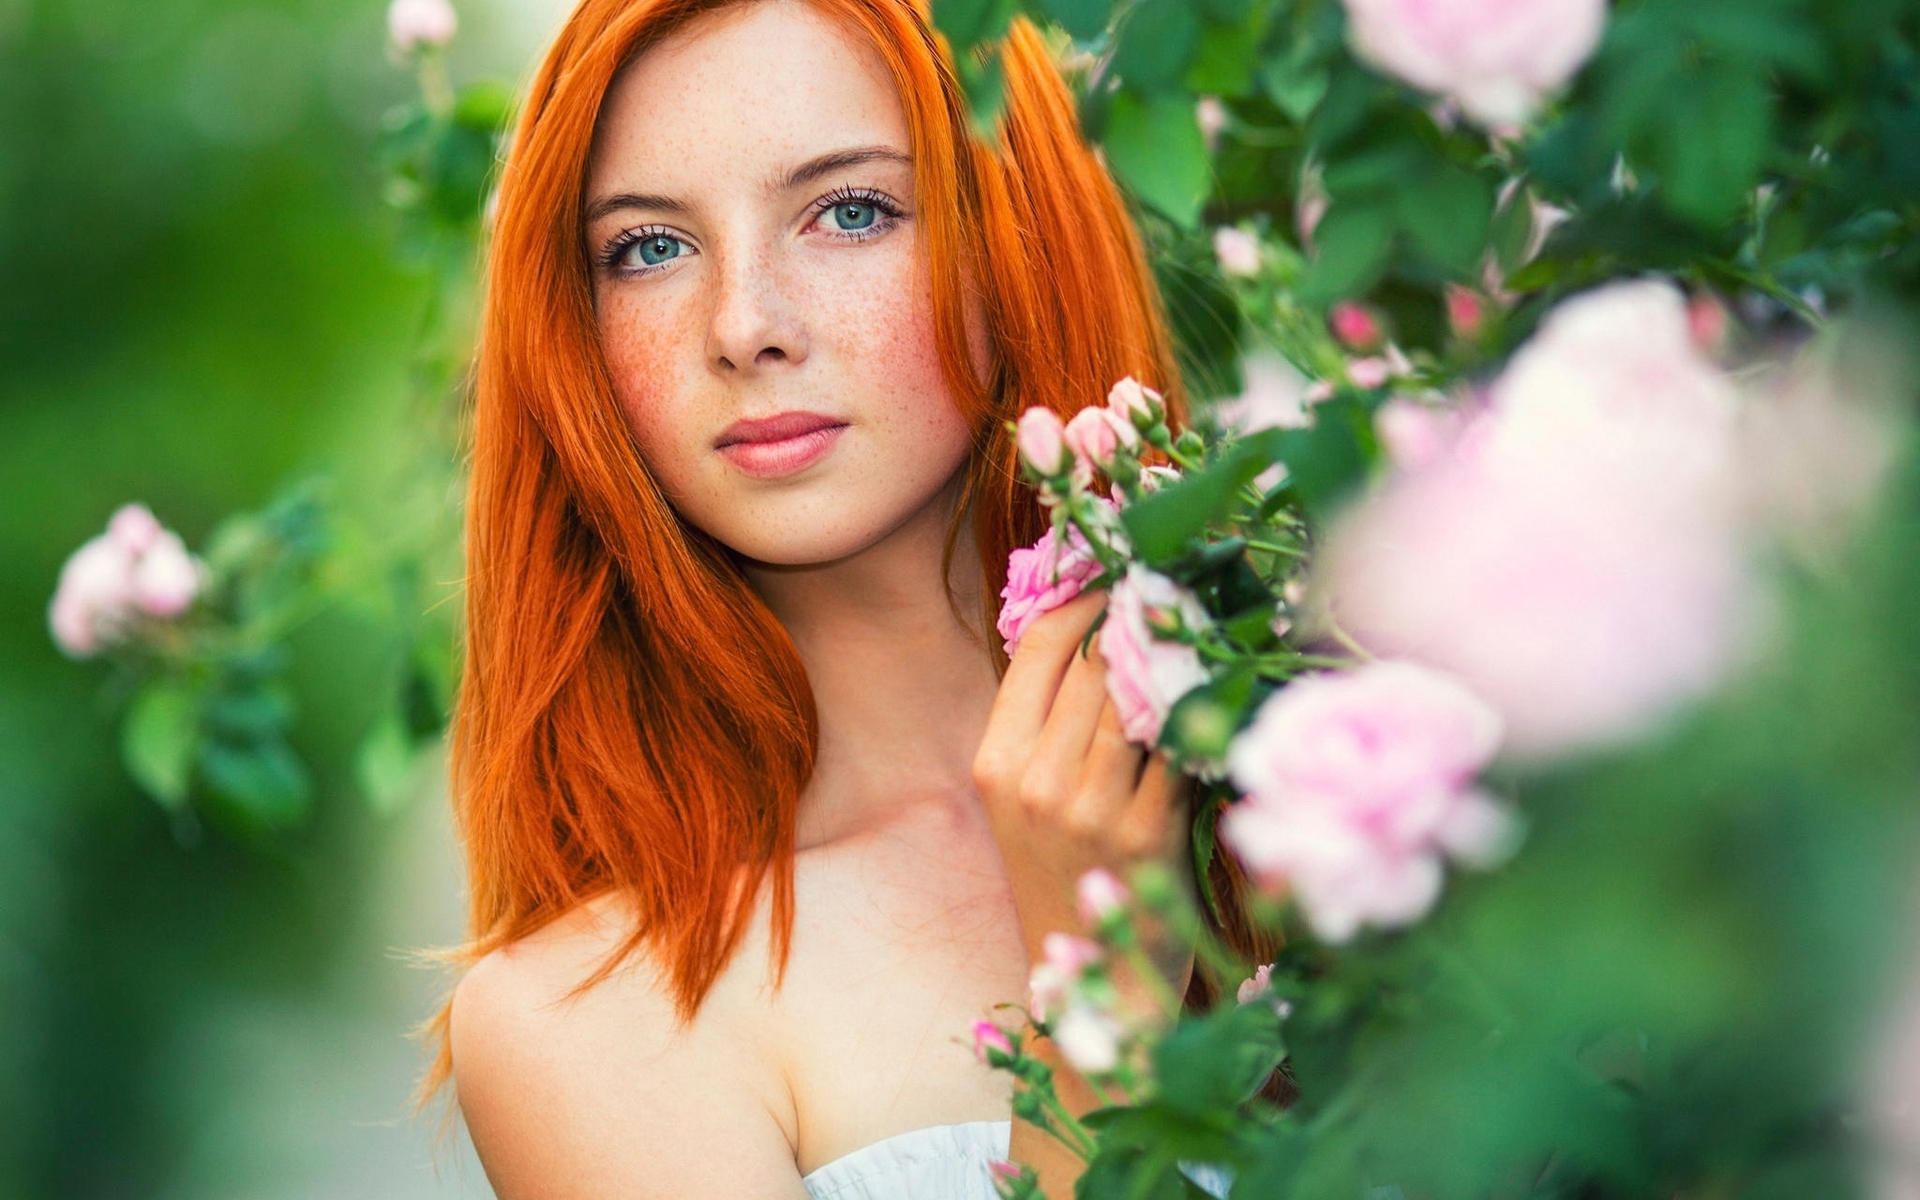 Картинка: Девушка, лицо, веснушки, глаза, макияж, волосы, рыжая, цветы